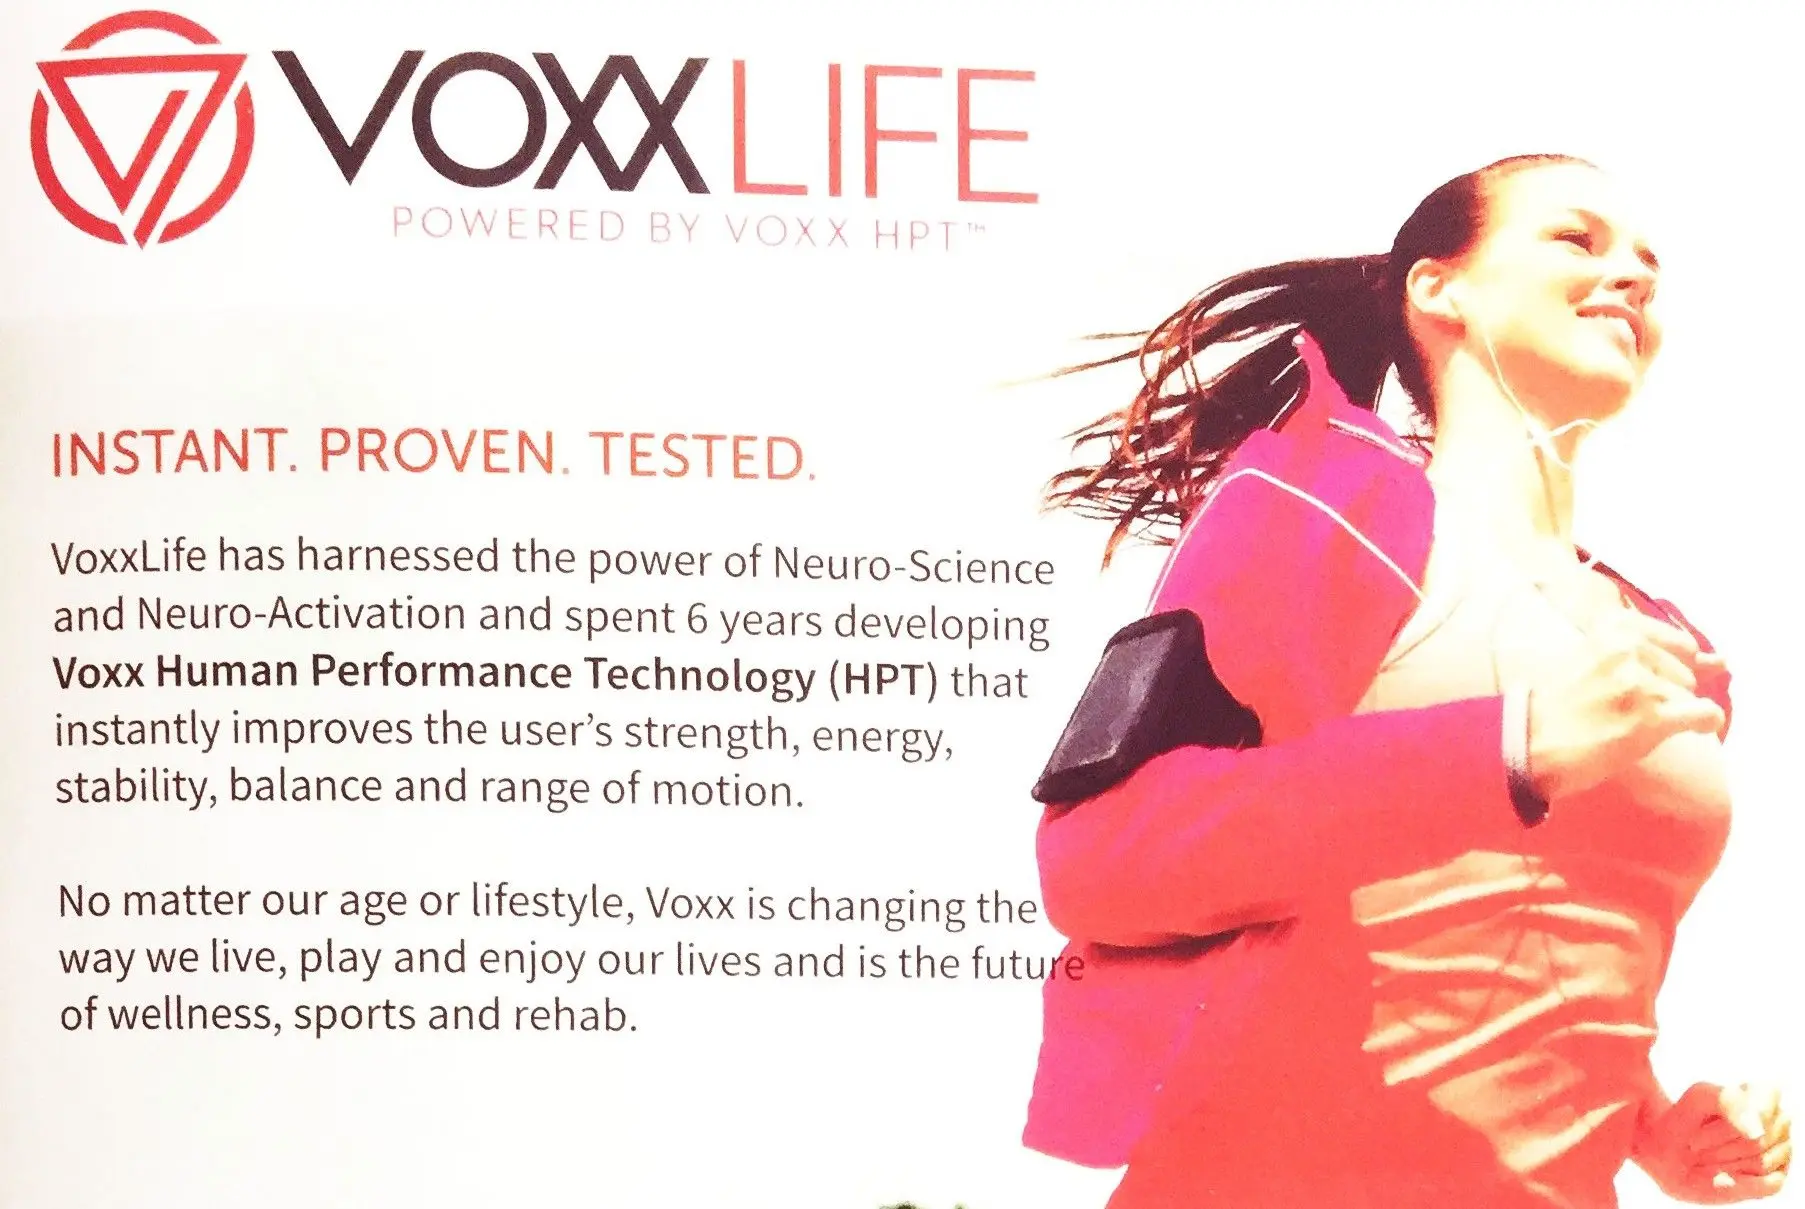 VoxxLife Benefits